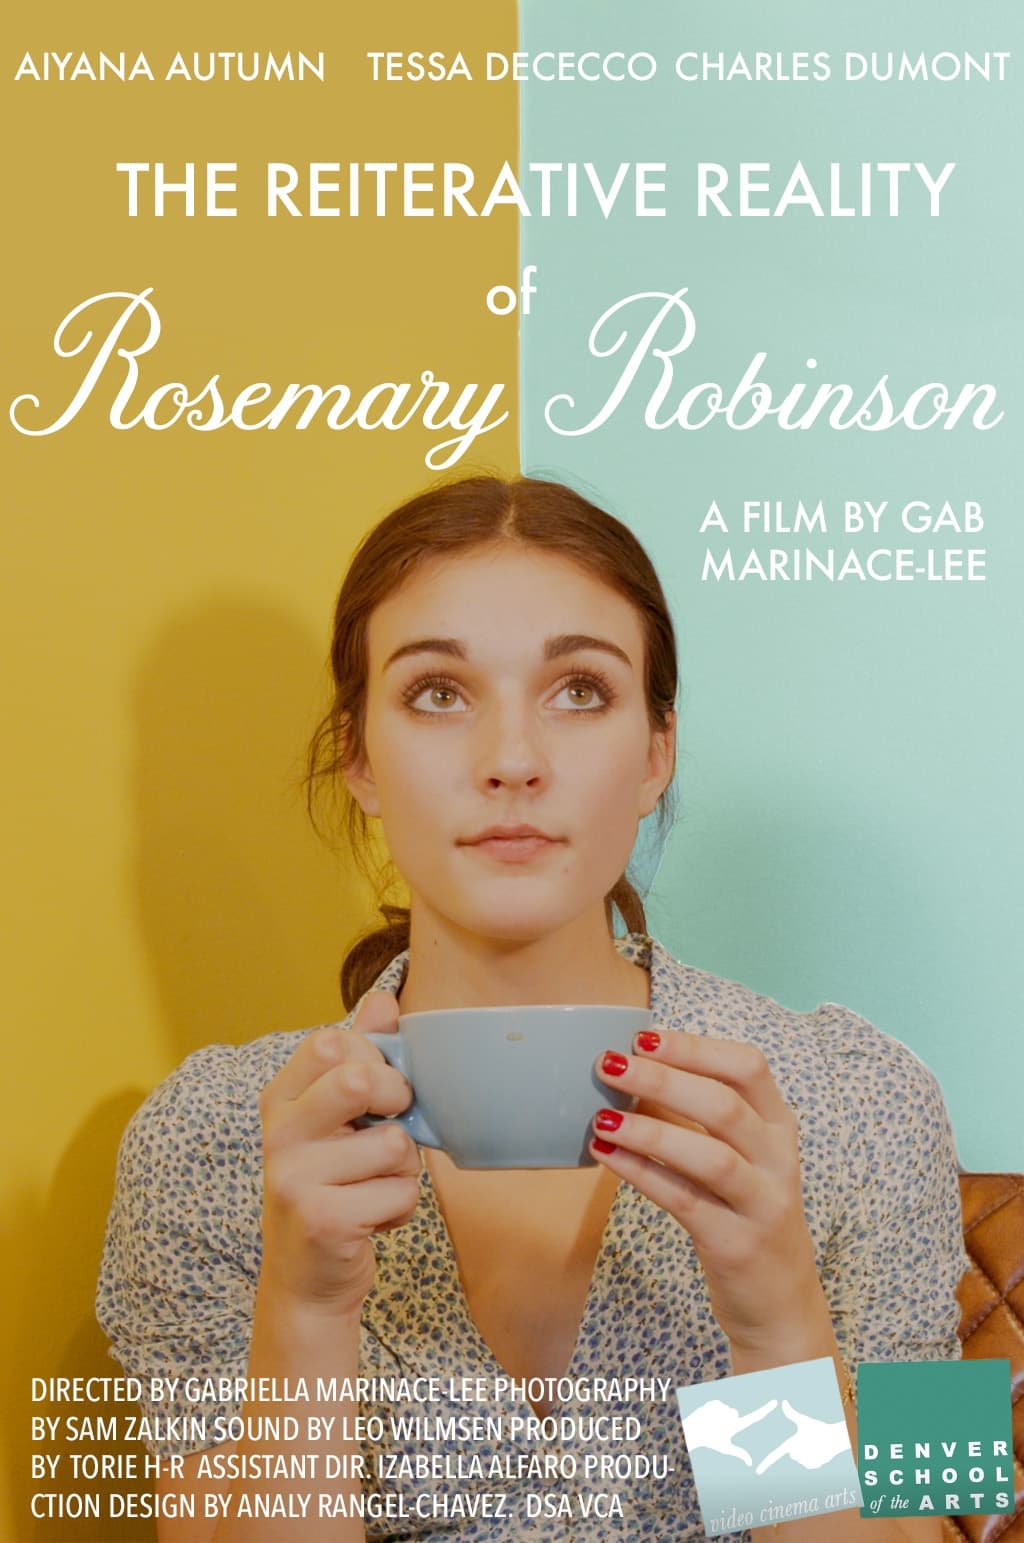 The Reiterative Reality of Rosemary Robinson